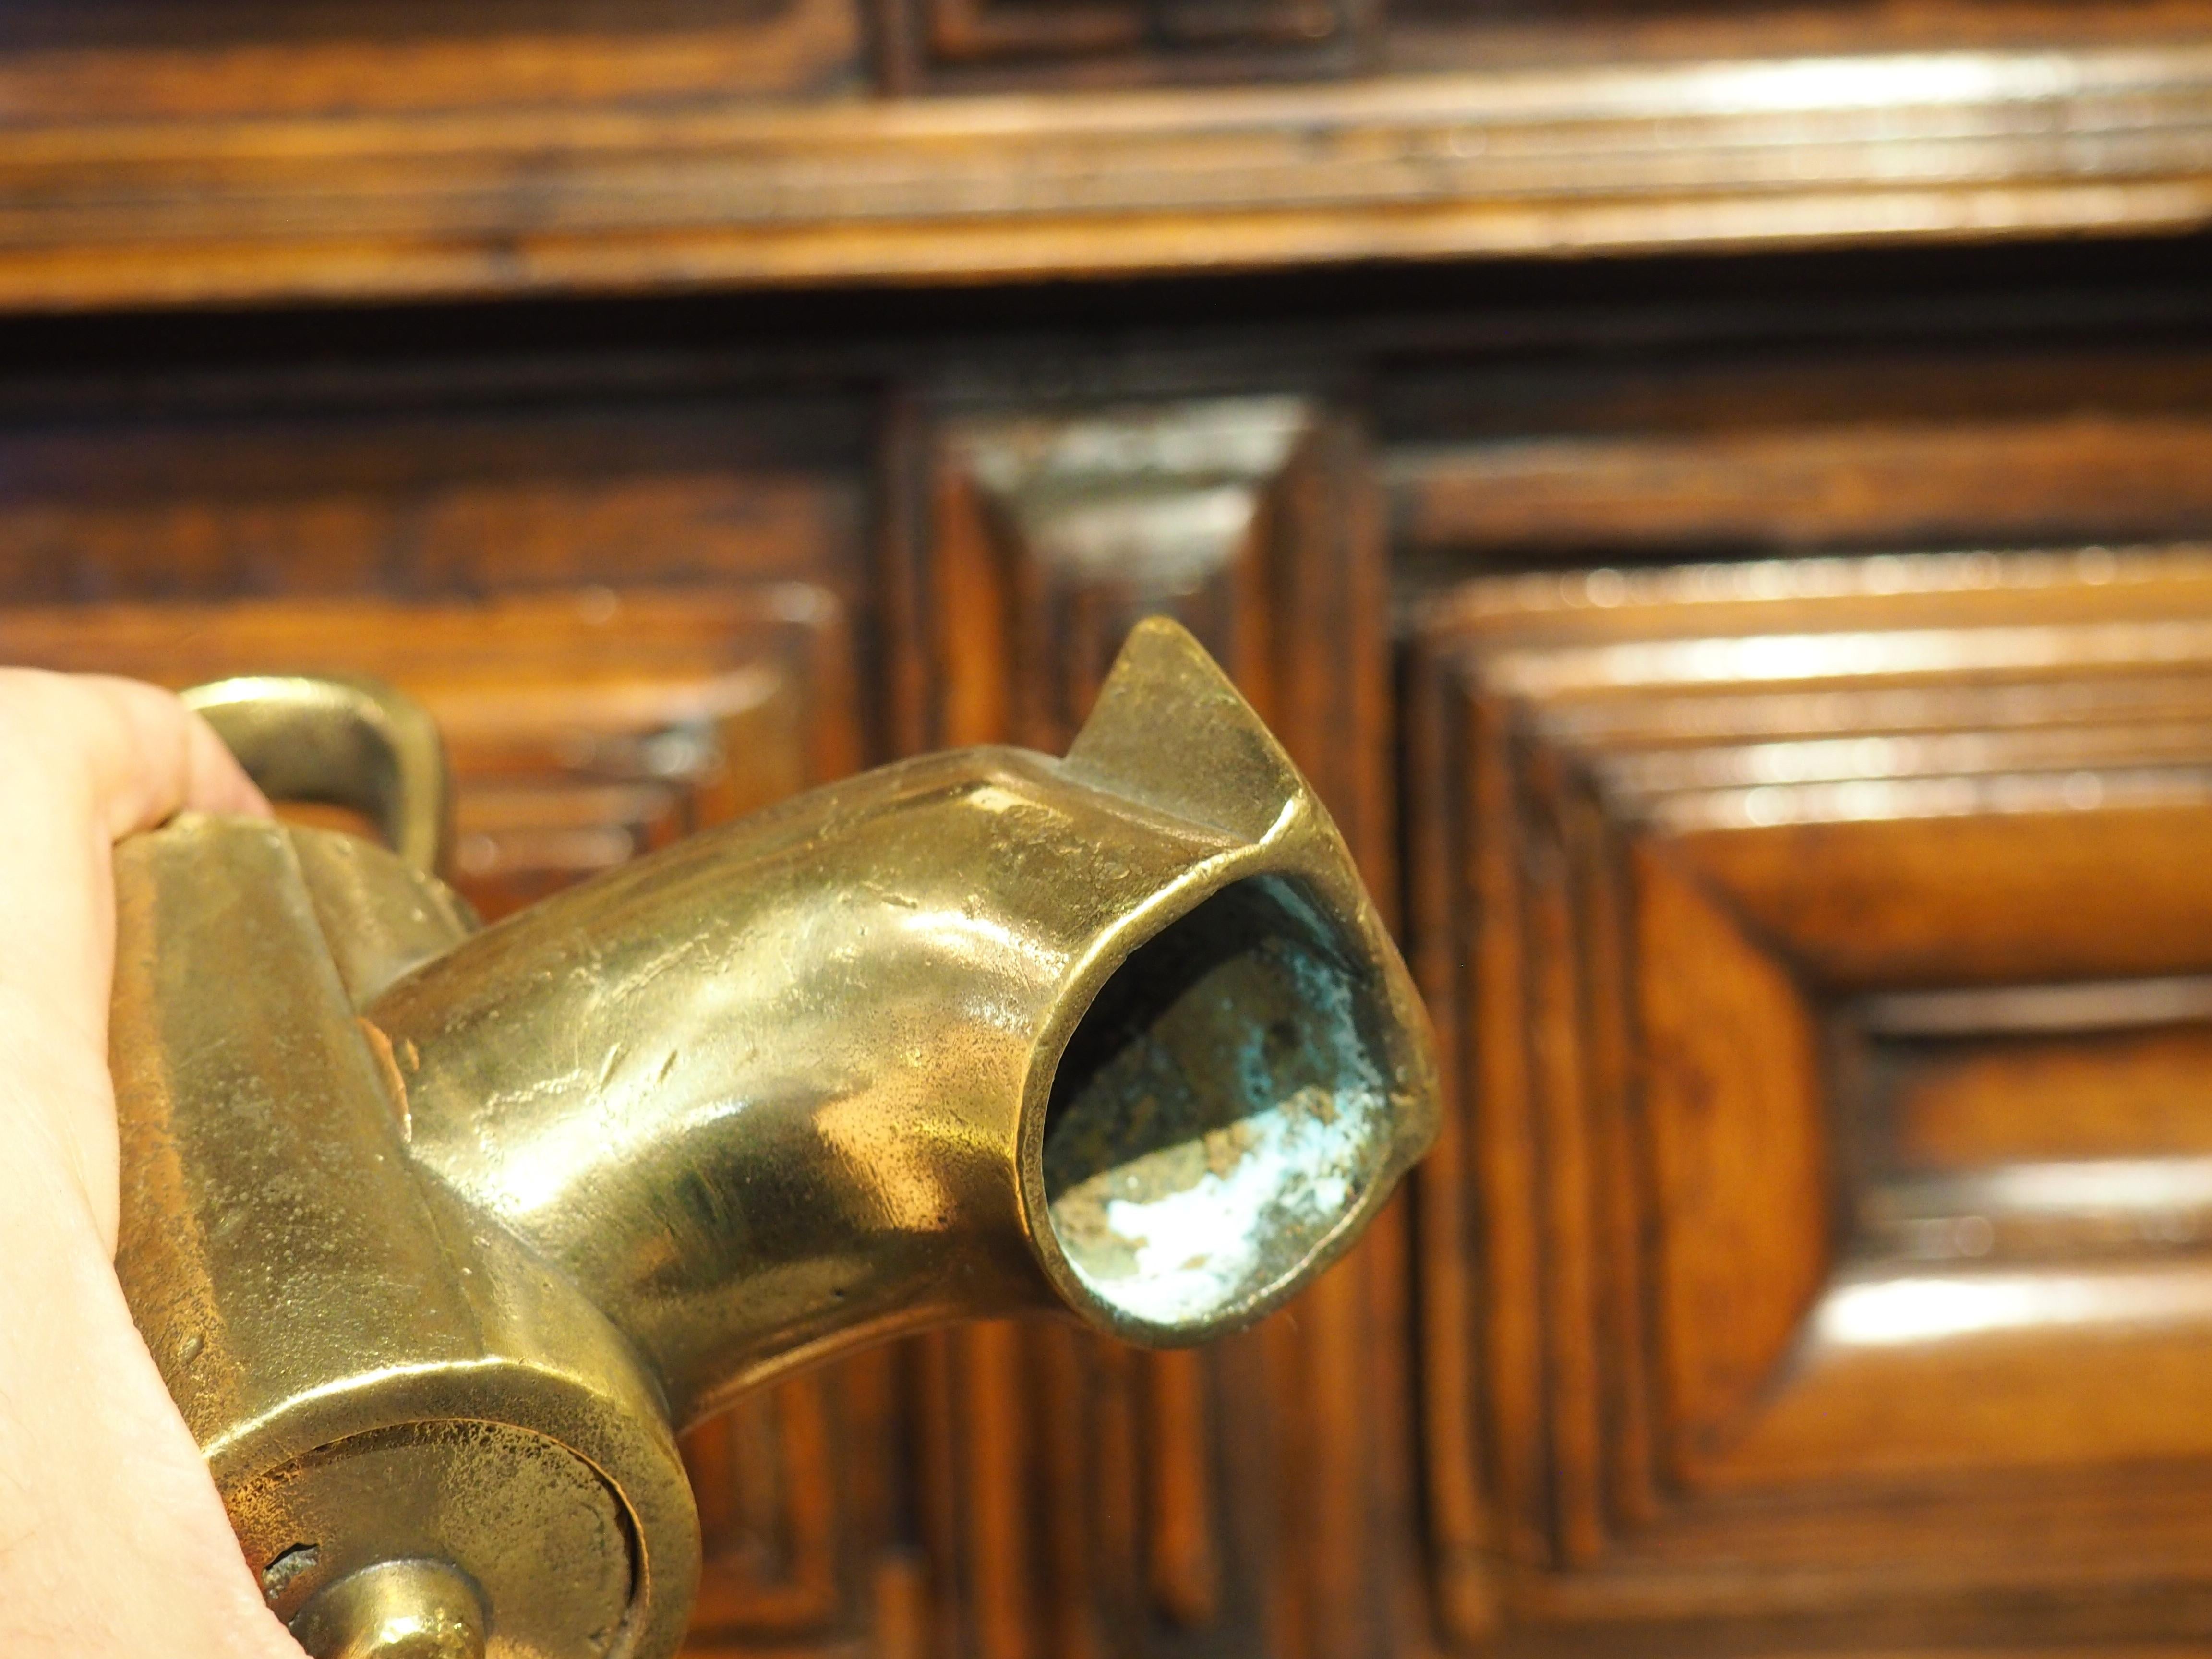 Ursprünglich ein Zapfhahn für ein französisches Weinfass, hat dieser Bronzeauslauf ein durchbrochenes Zwei-Finger-Drehventil, das an eine Krone erinnert. Die Tülle, die aus der Zeit um 1800 stammt, ist außerdem mit einer eckigen Kerbe am Ende des